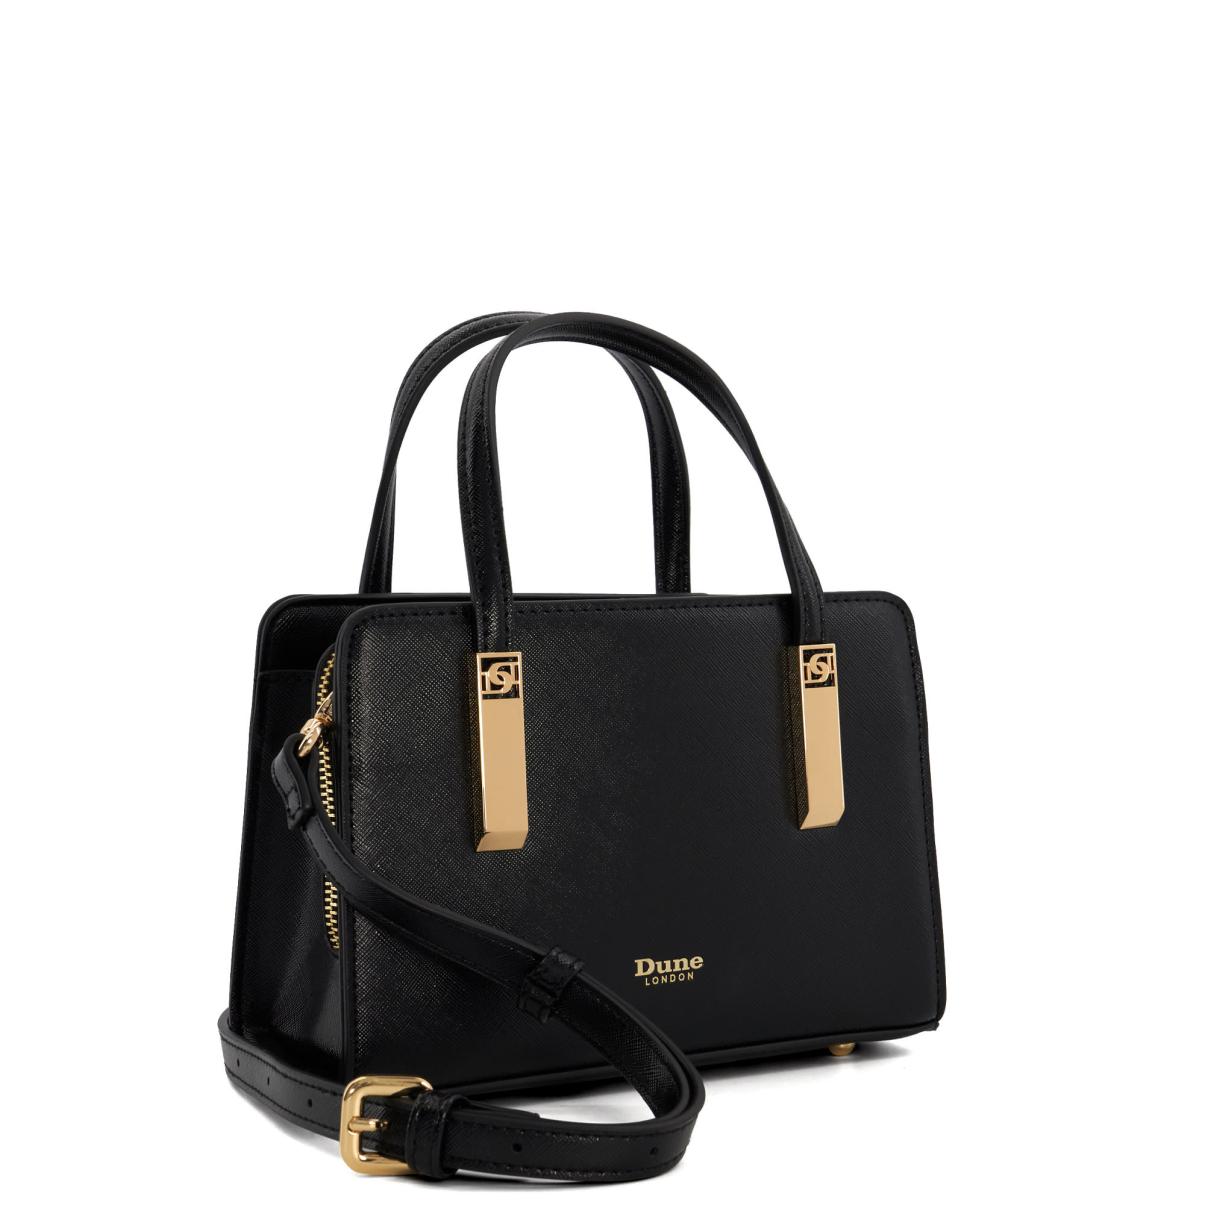 Handbags Women Dune London Dinkydenbeigh - Black - 2